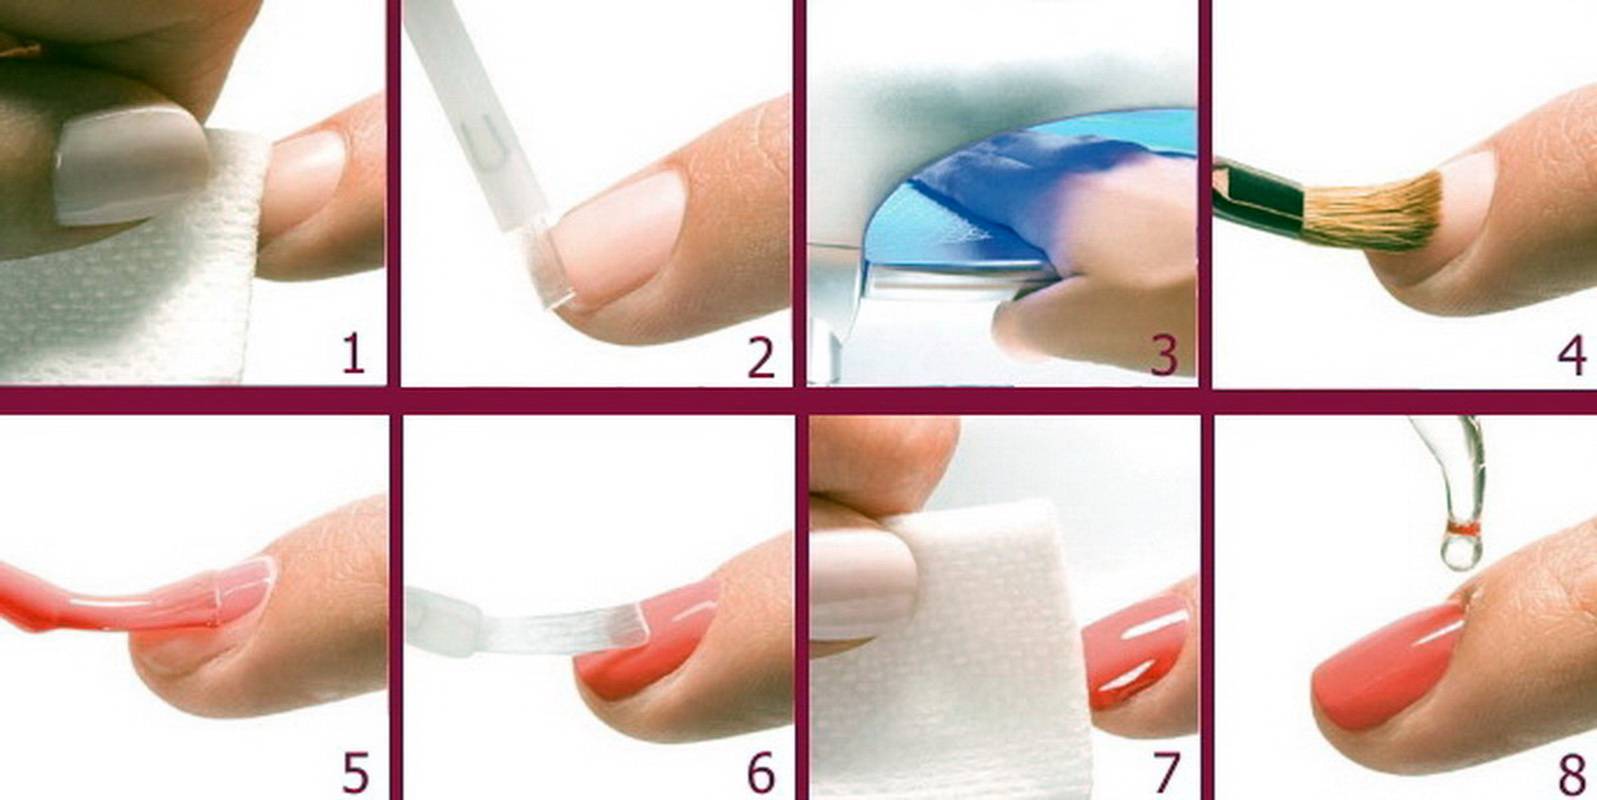 5 советов, как покрывать ногти гель-лаком в домашних условиях